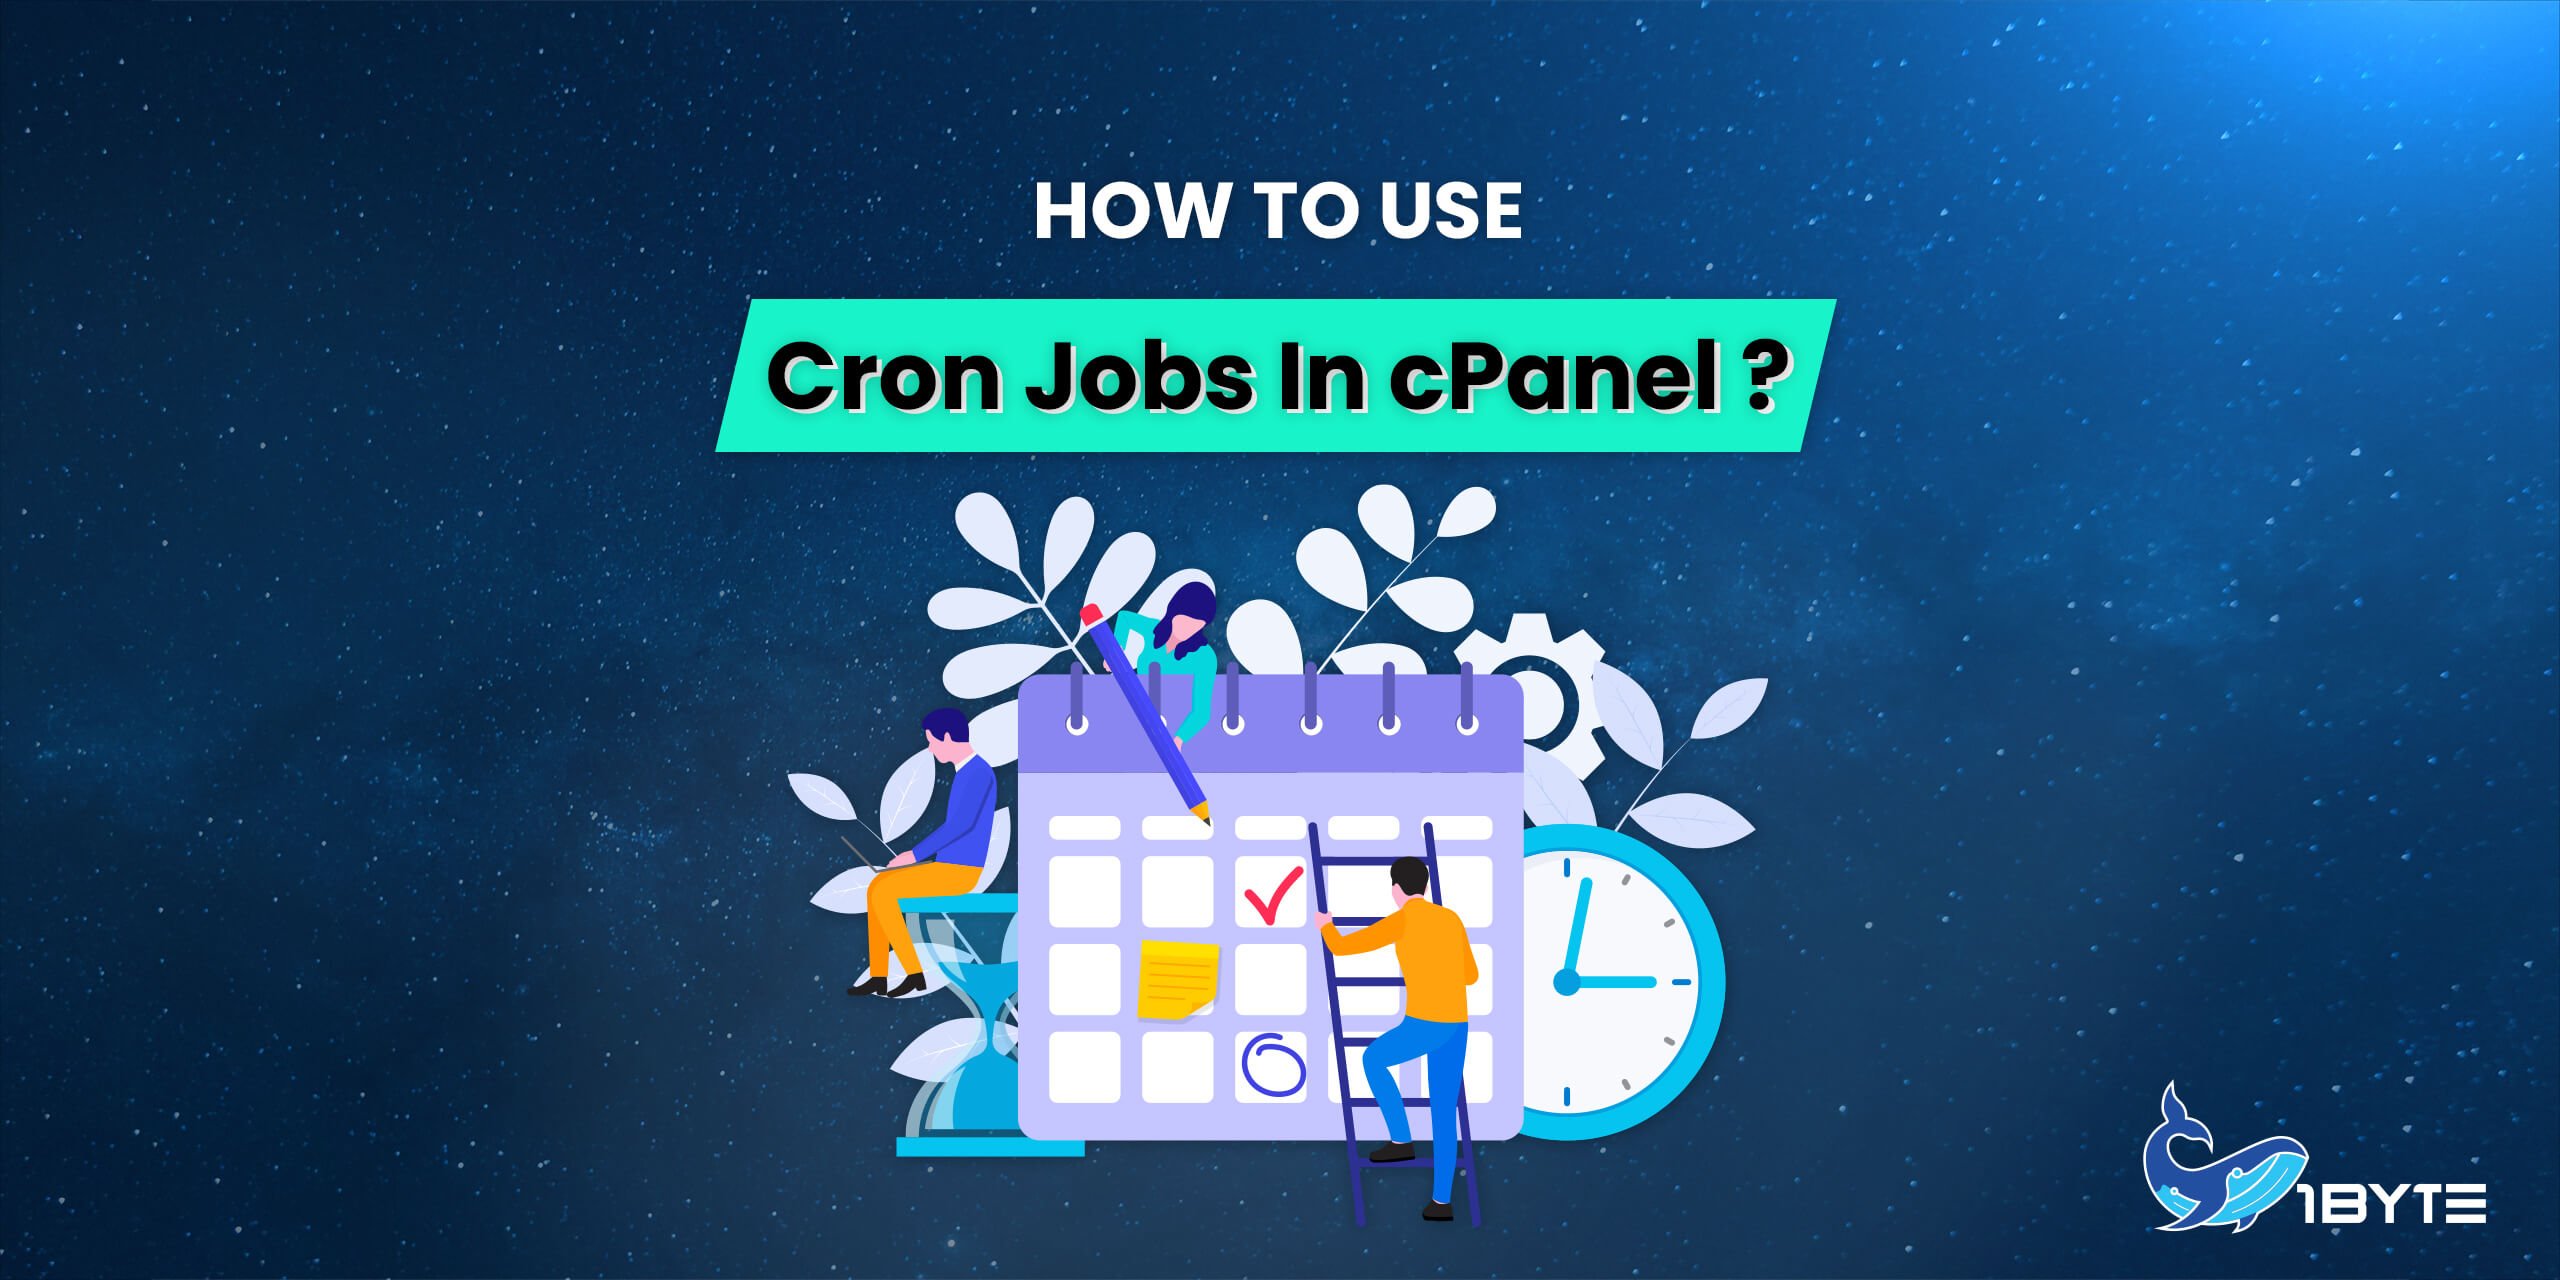 របៀបប្រើ Cron Jobs នៅក្នុង cPanel?